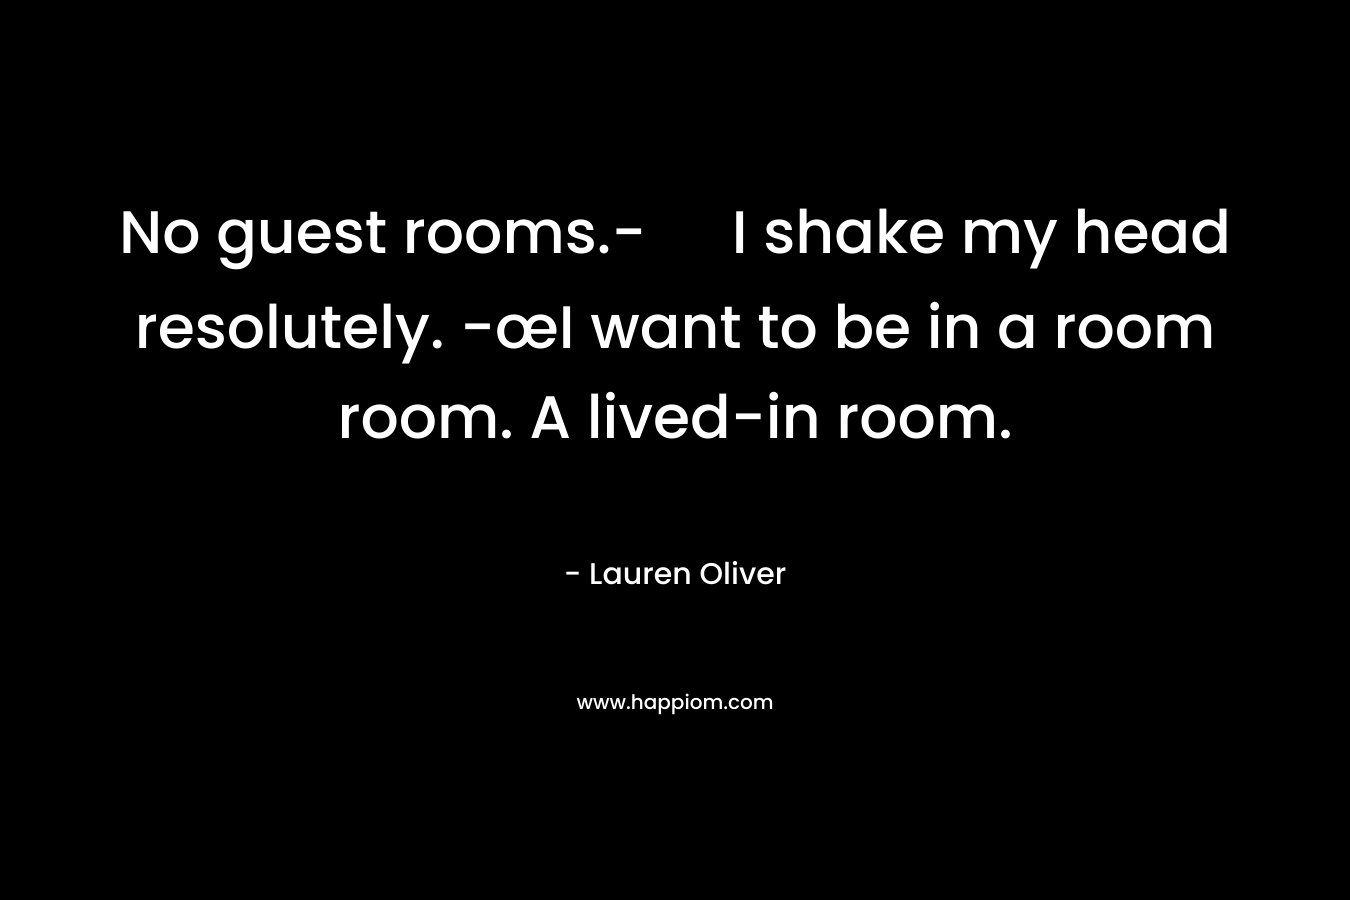 No guest rooms.- I shake my head resolutely. -œI want to be in a room room. A lived-in room.